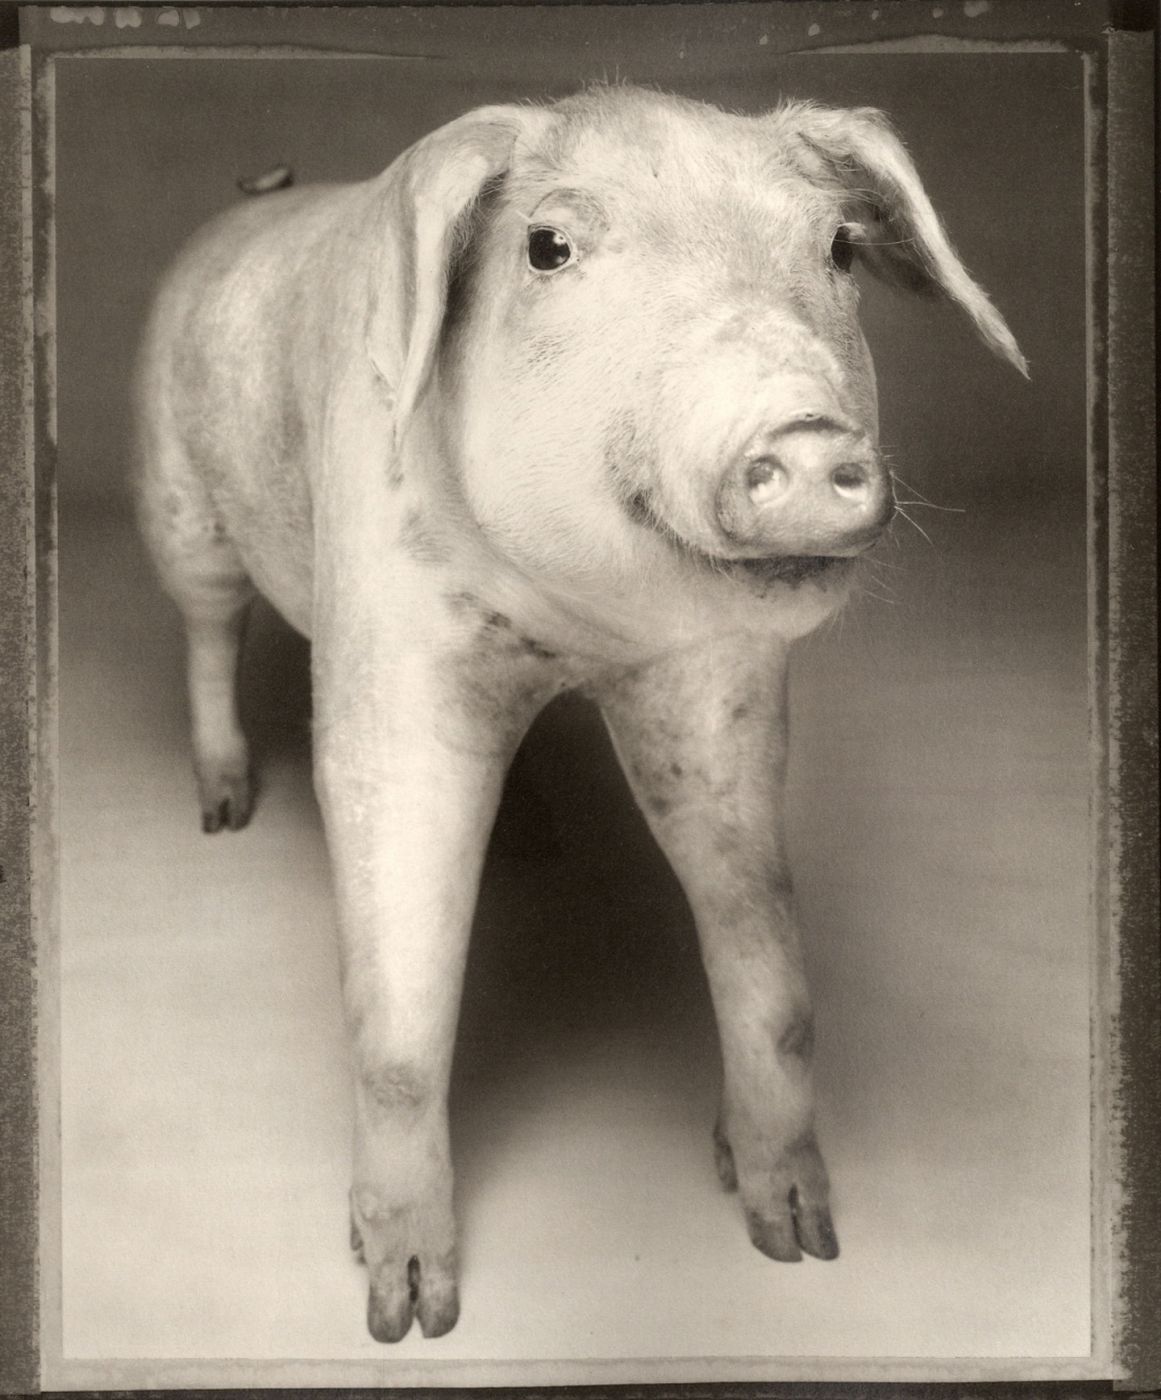 Animal series, 1982. Беттина Реймс (Bettina Rheims) - современный французский фотограф. Современная фотография. Фотография как искусство